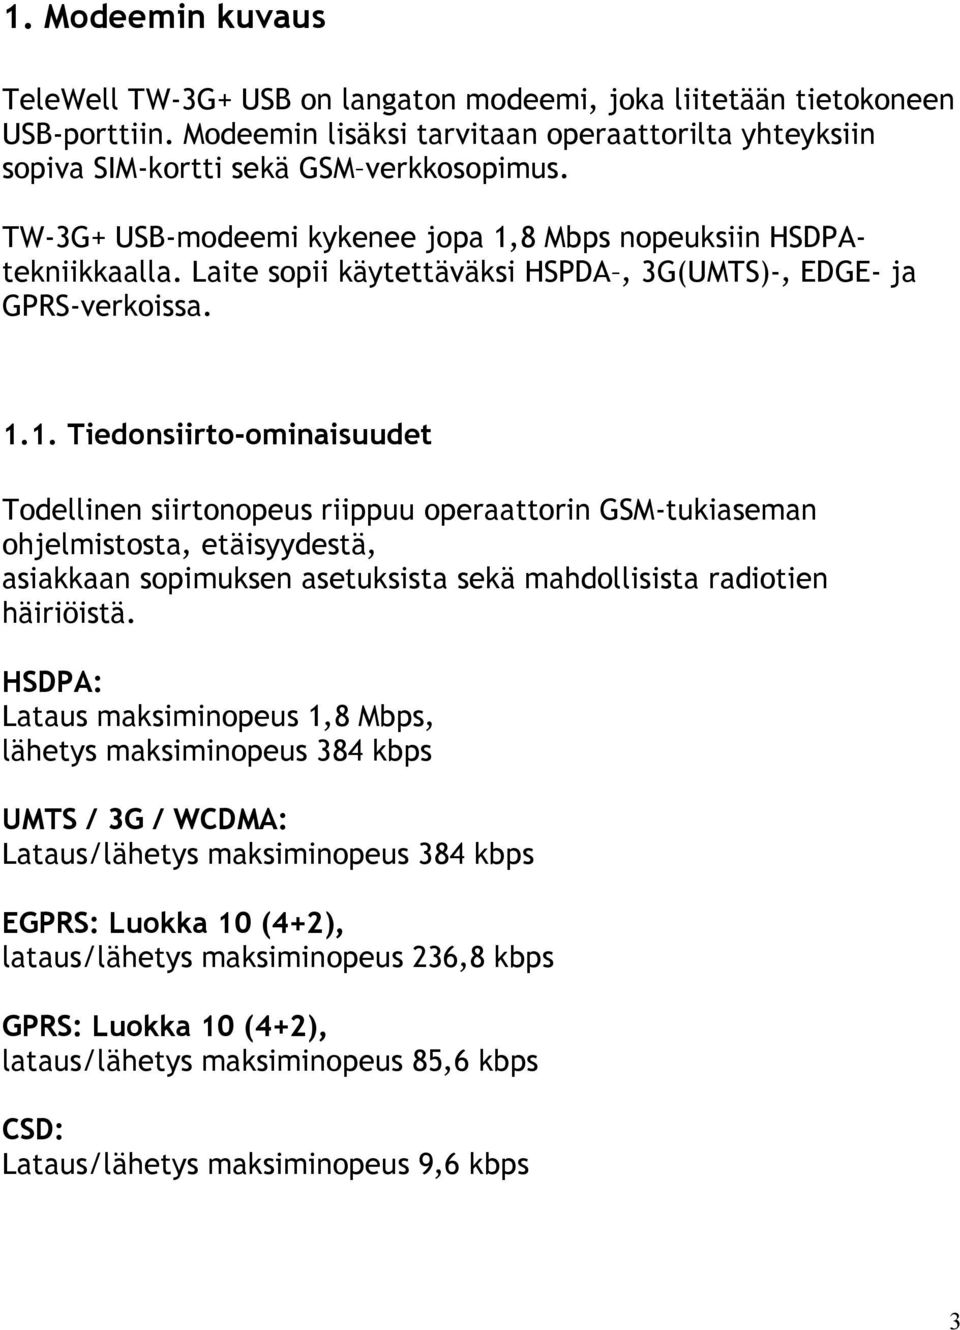 8 Mbps nopeuksiin HSDPAtekniikkaalla. Laite sopii käytettäväksi HSPDA, 3G(UMTS)-, EDGE- ja GPRS-verkoissa. 1.